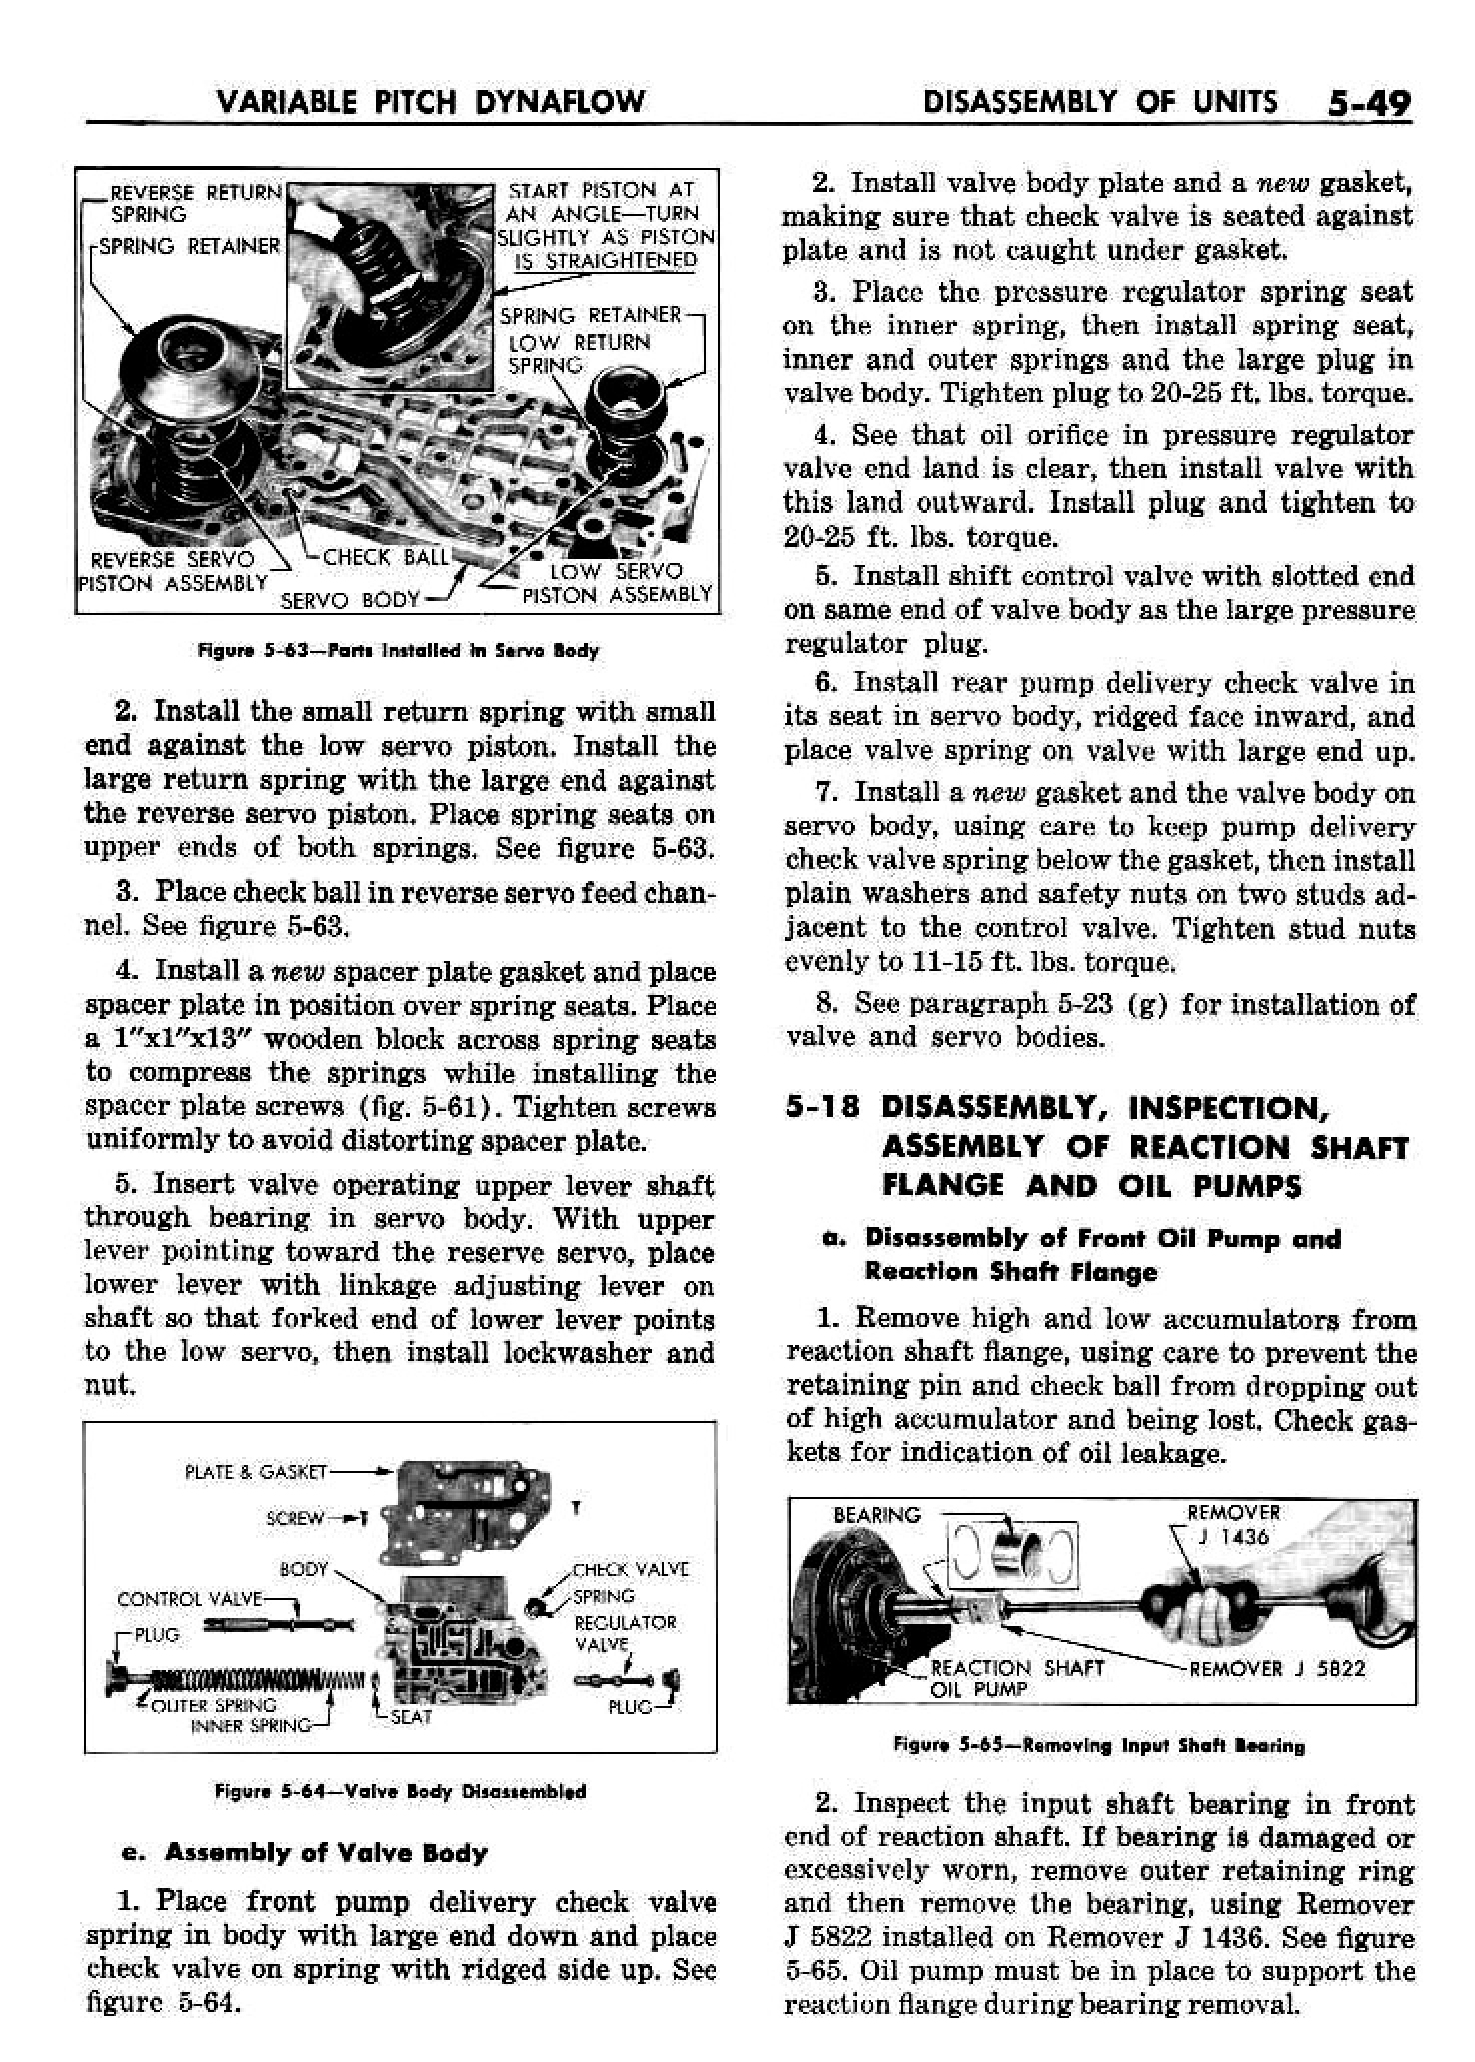 n_06 1958 Buick Shop Manual - Dynaflow_49.jpg